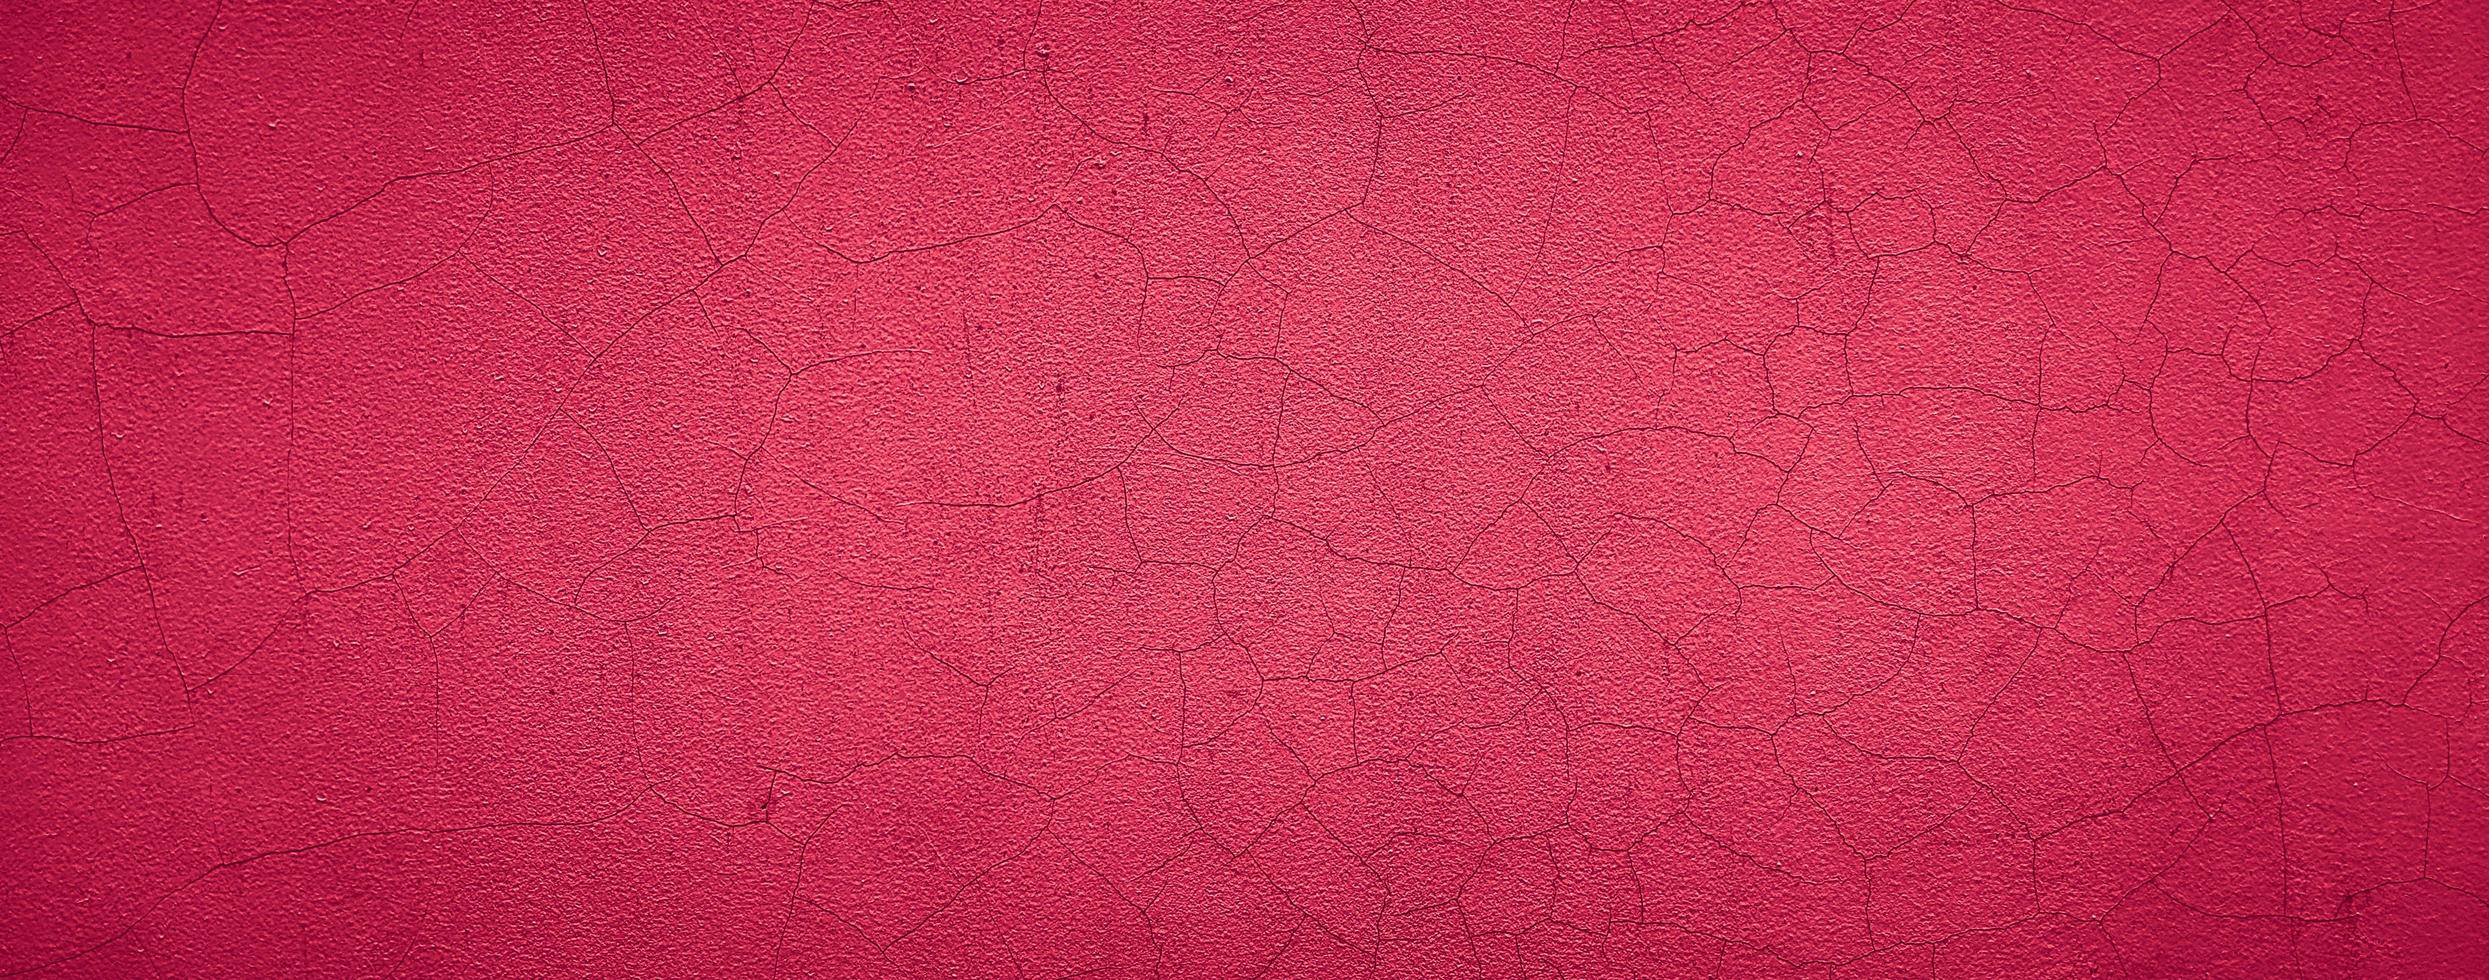 fundo de parede de concreto de cimento de textura abstrata vermelha foto